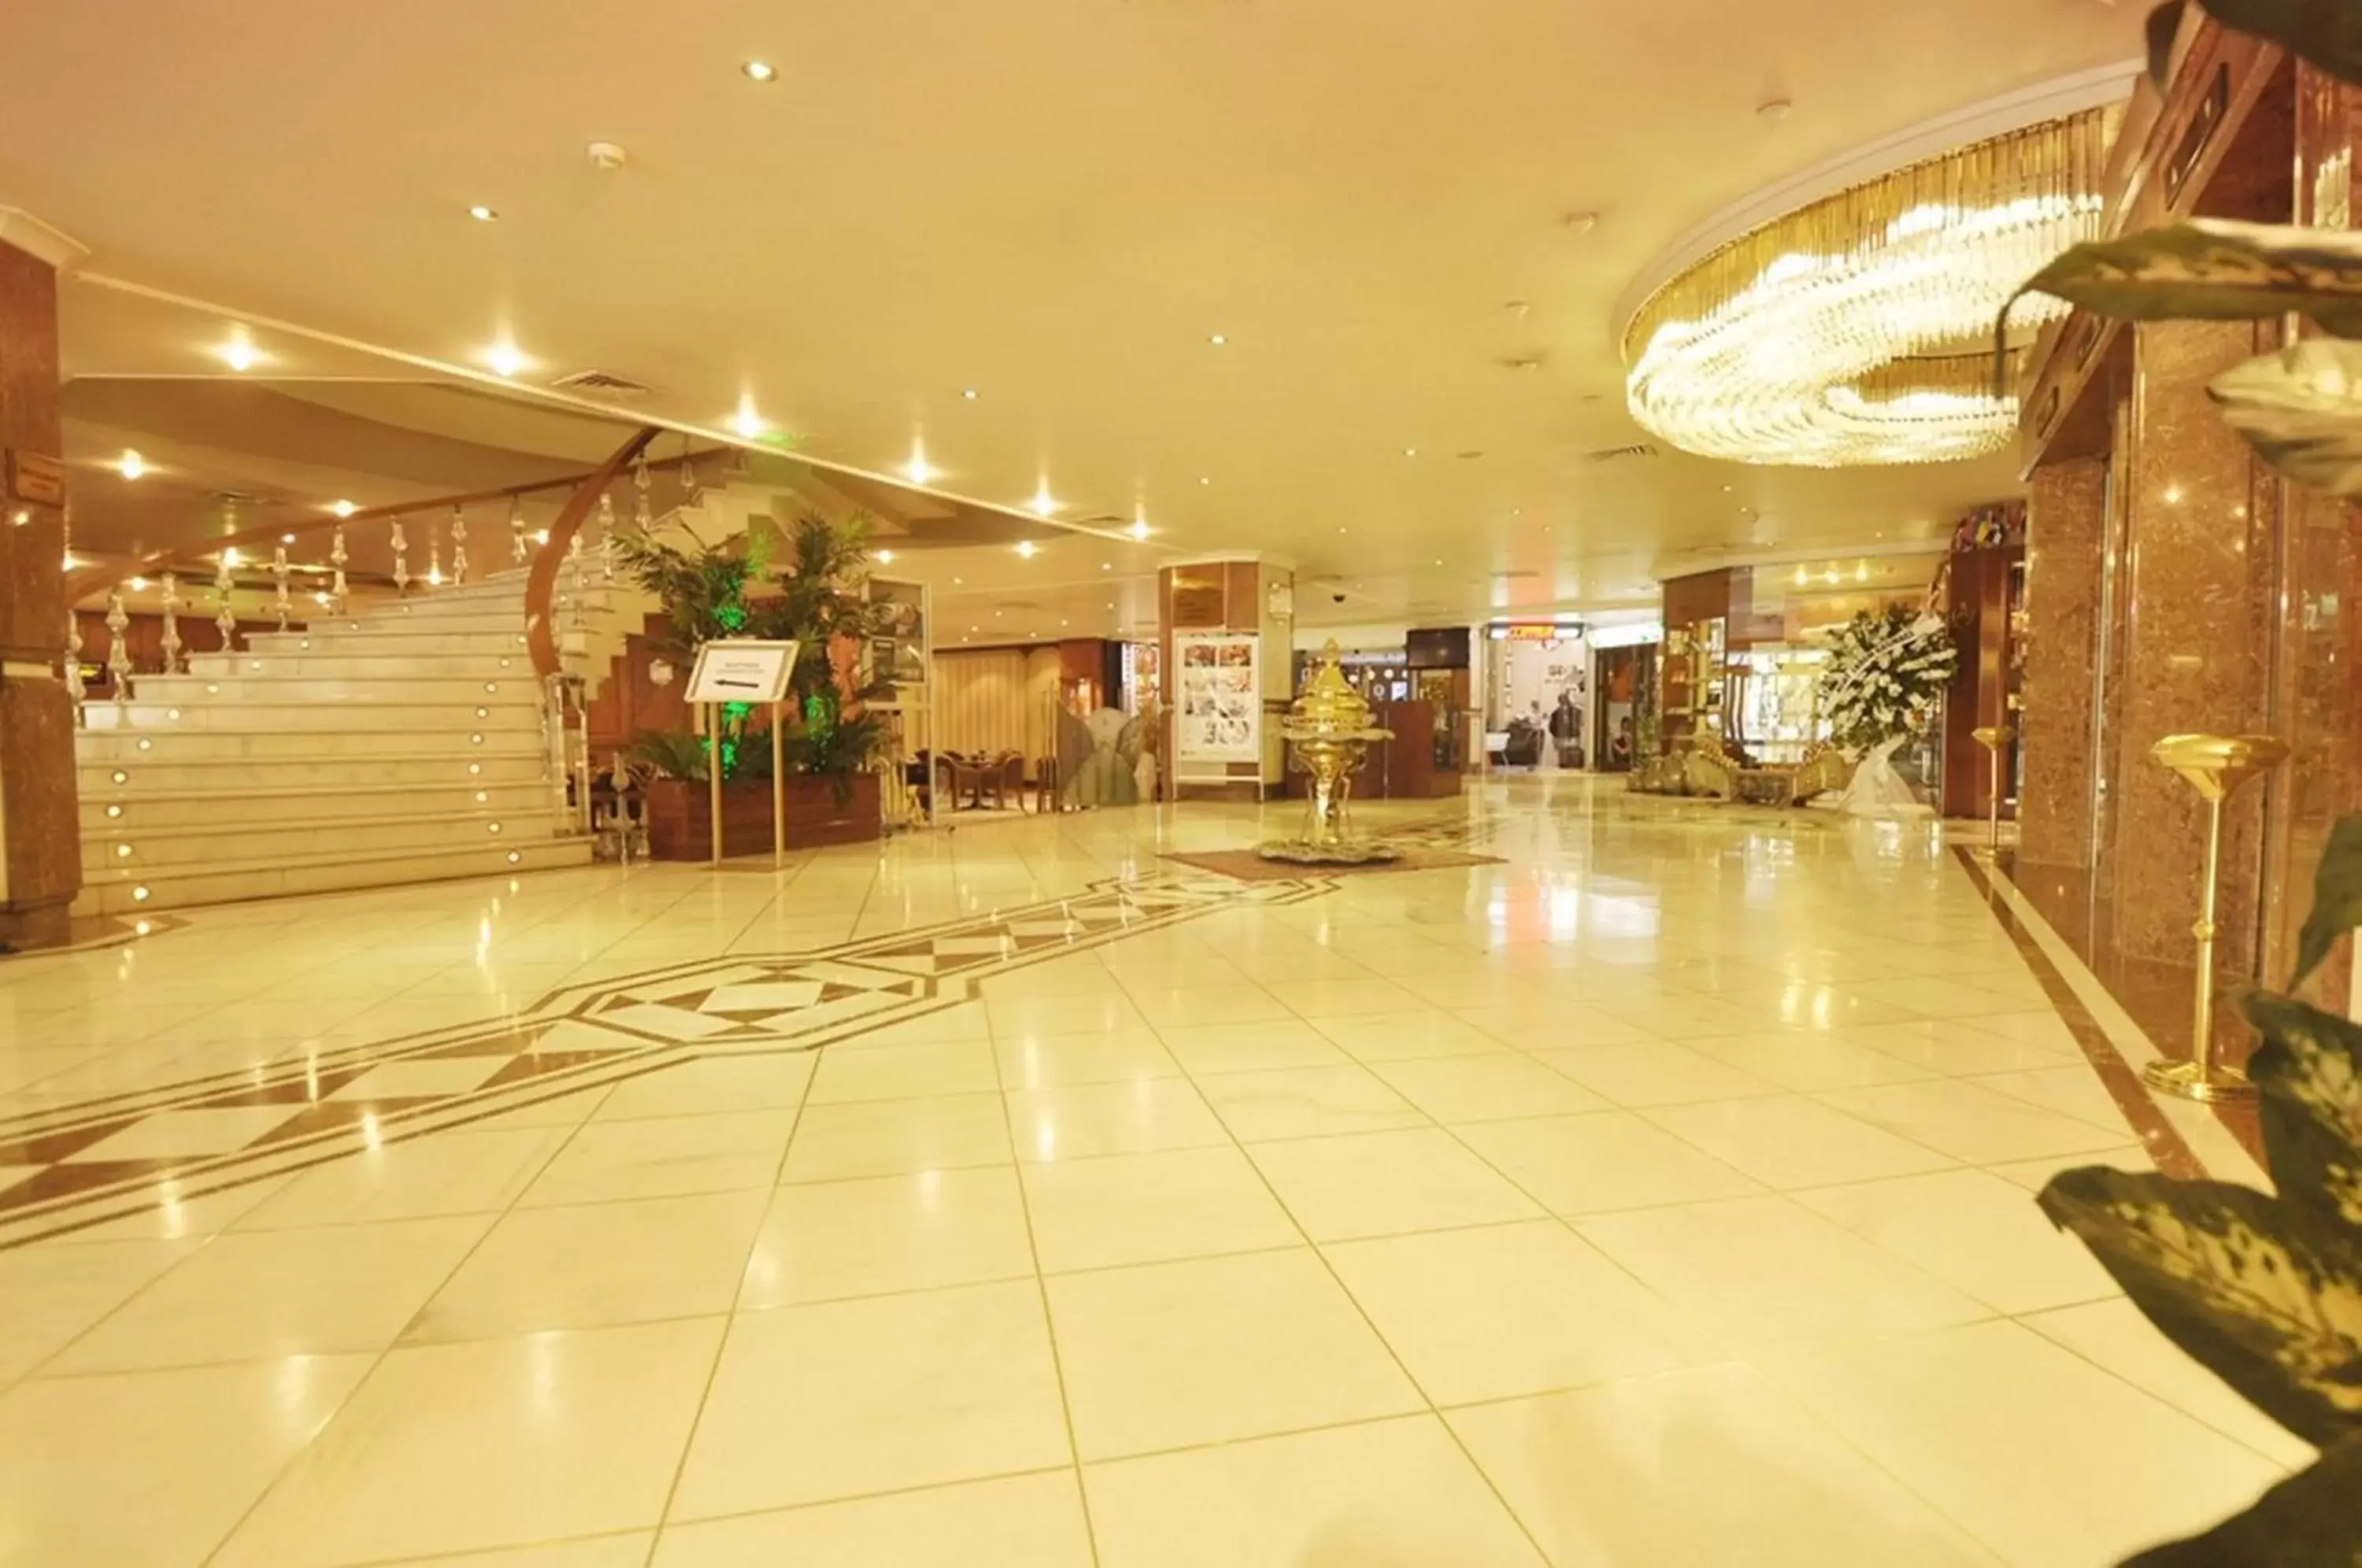 Lobby or reception, Lobby/Reception in Akgun Istanbul Hotel